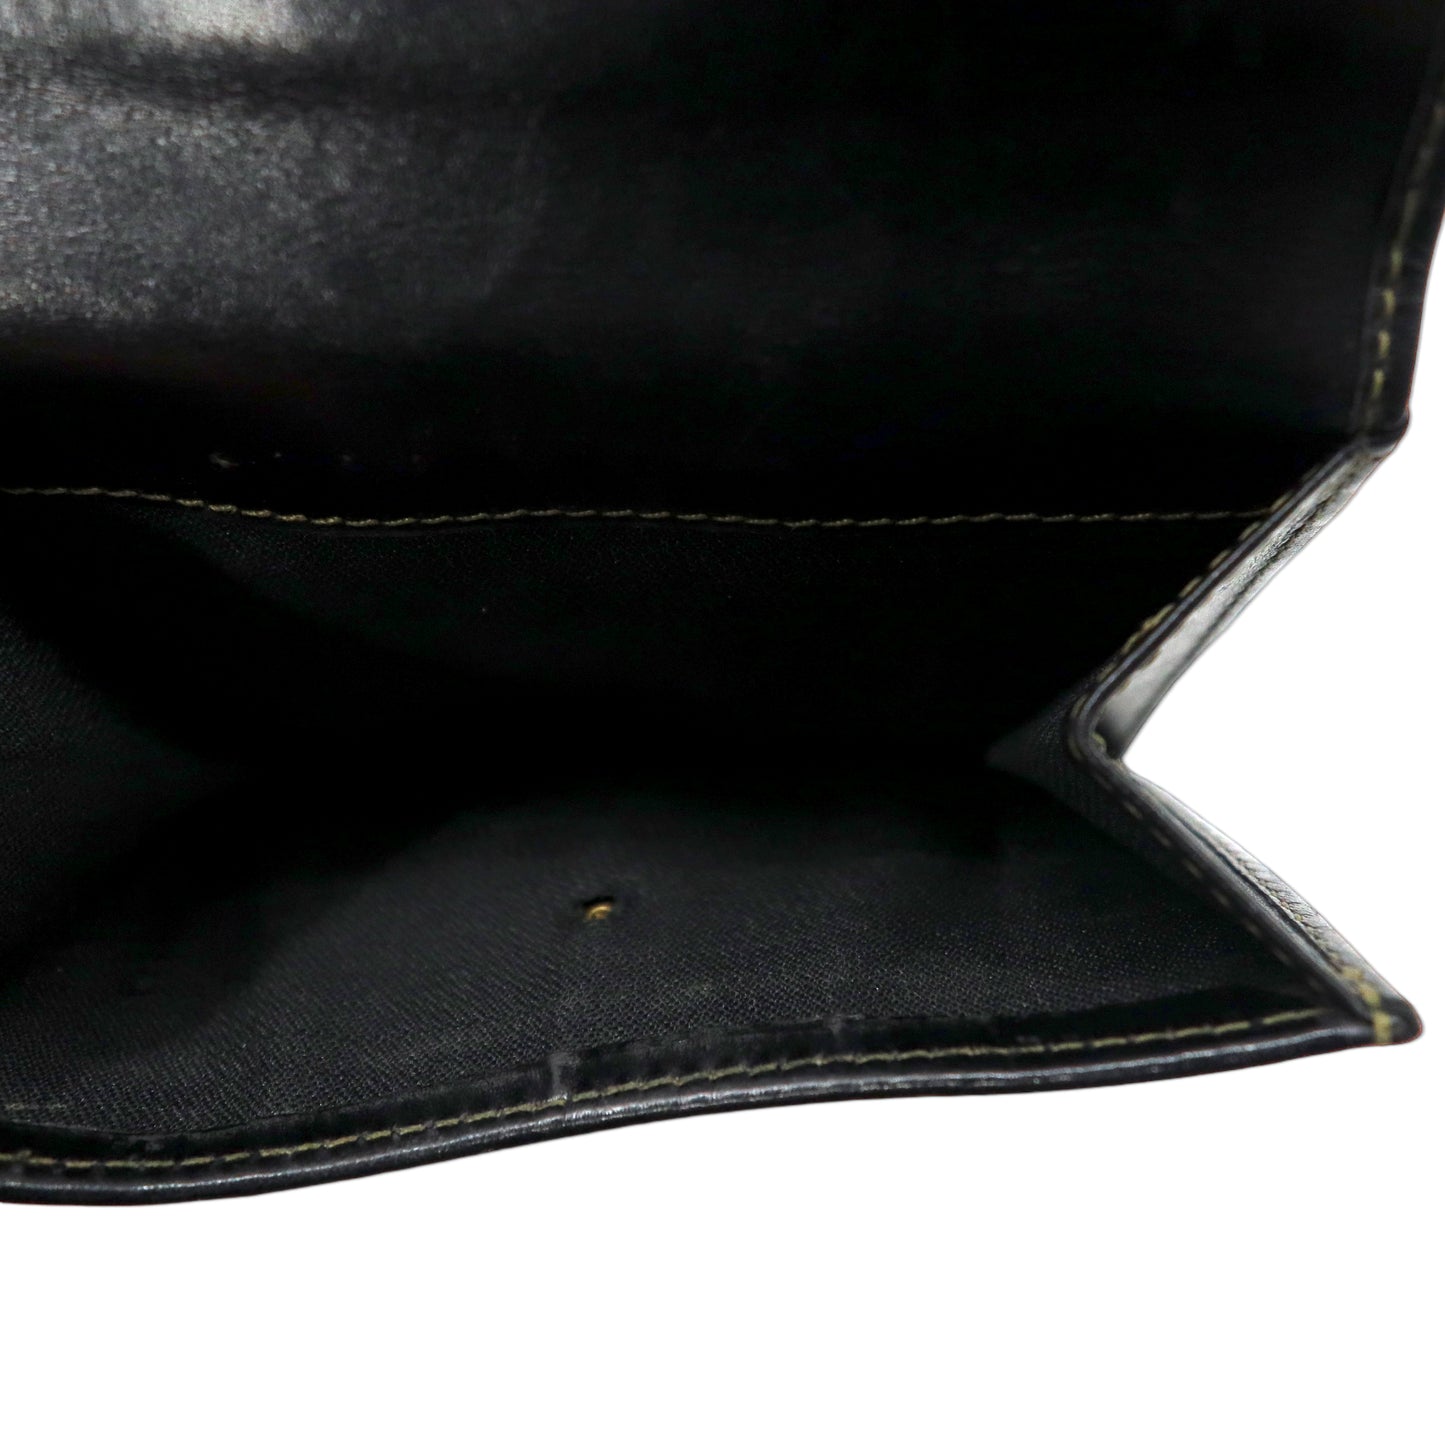 FENDI 2つ折り財布 コンパクトウォレット ペカン柄 ブラック カーキ レザー PVC オールド 2251-01695-078 イタリア製